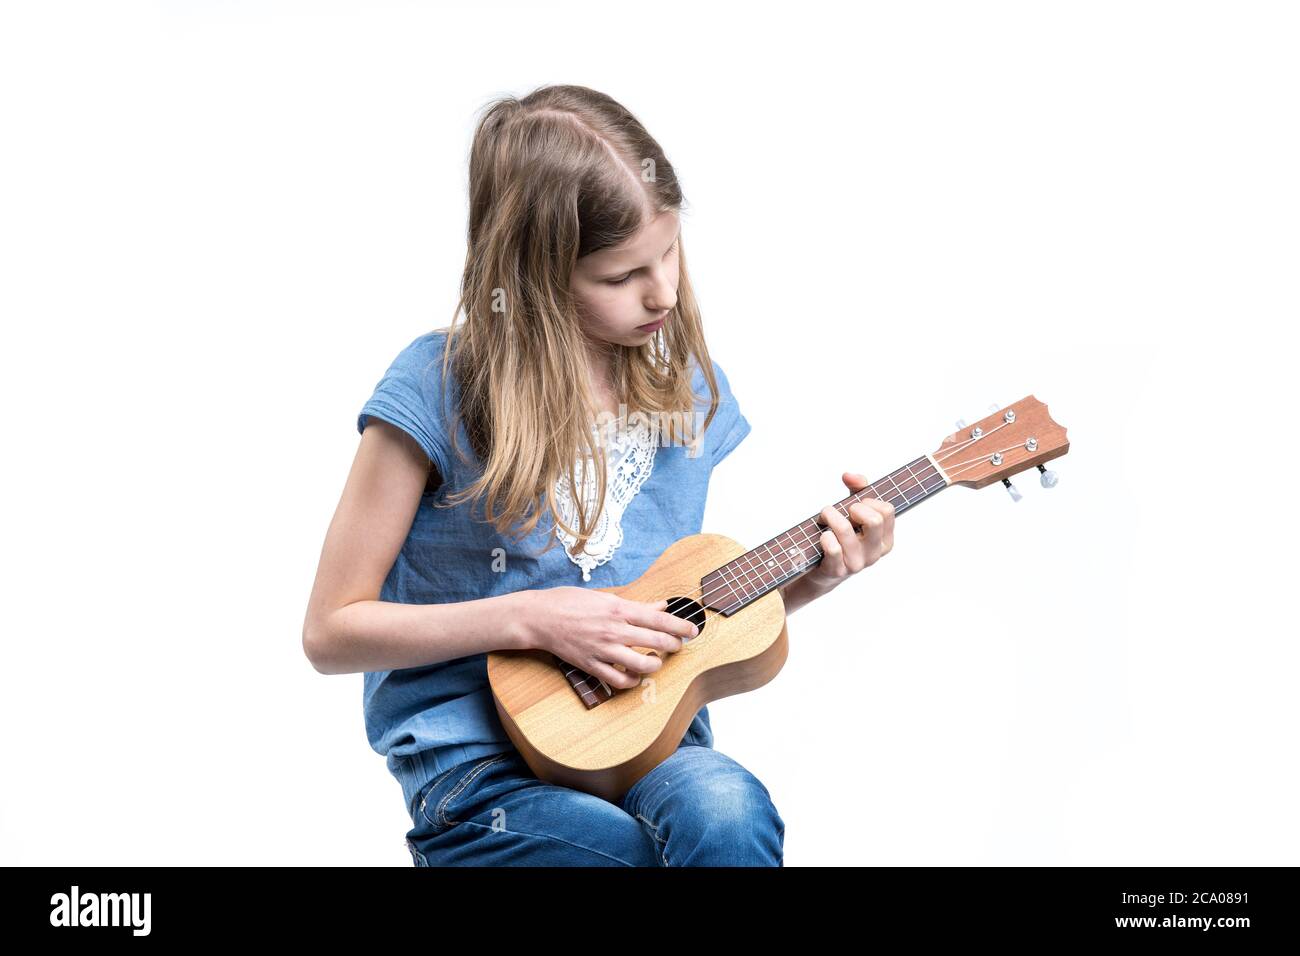 Junge, blonde Mädchen in blauem T-Shirt spielt Musik auf Ukulele-Instrument. Stockfoto